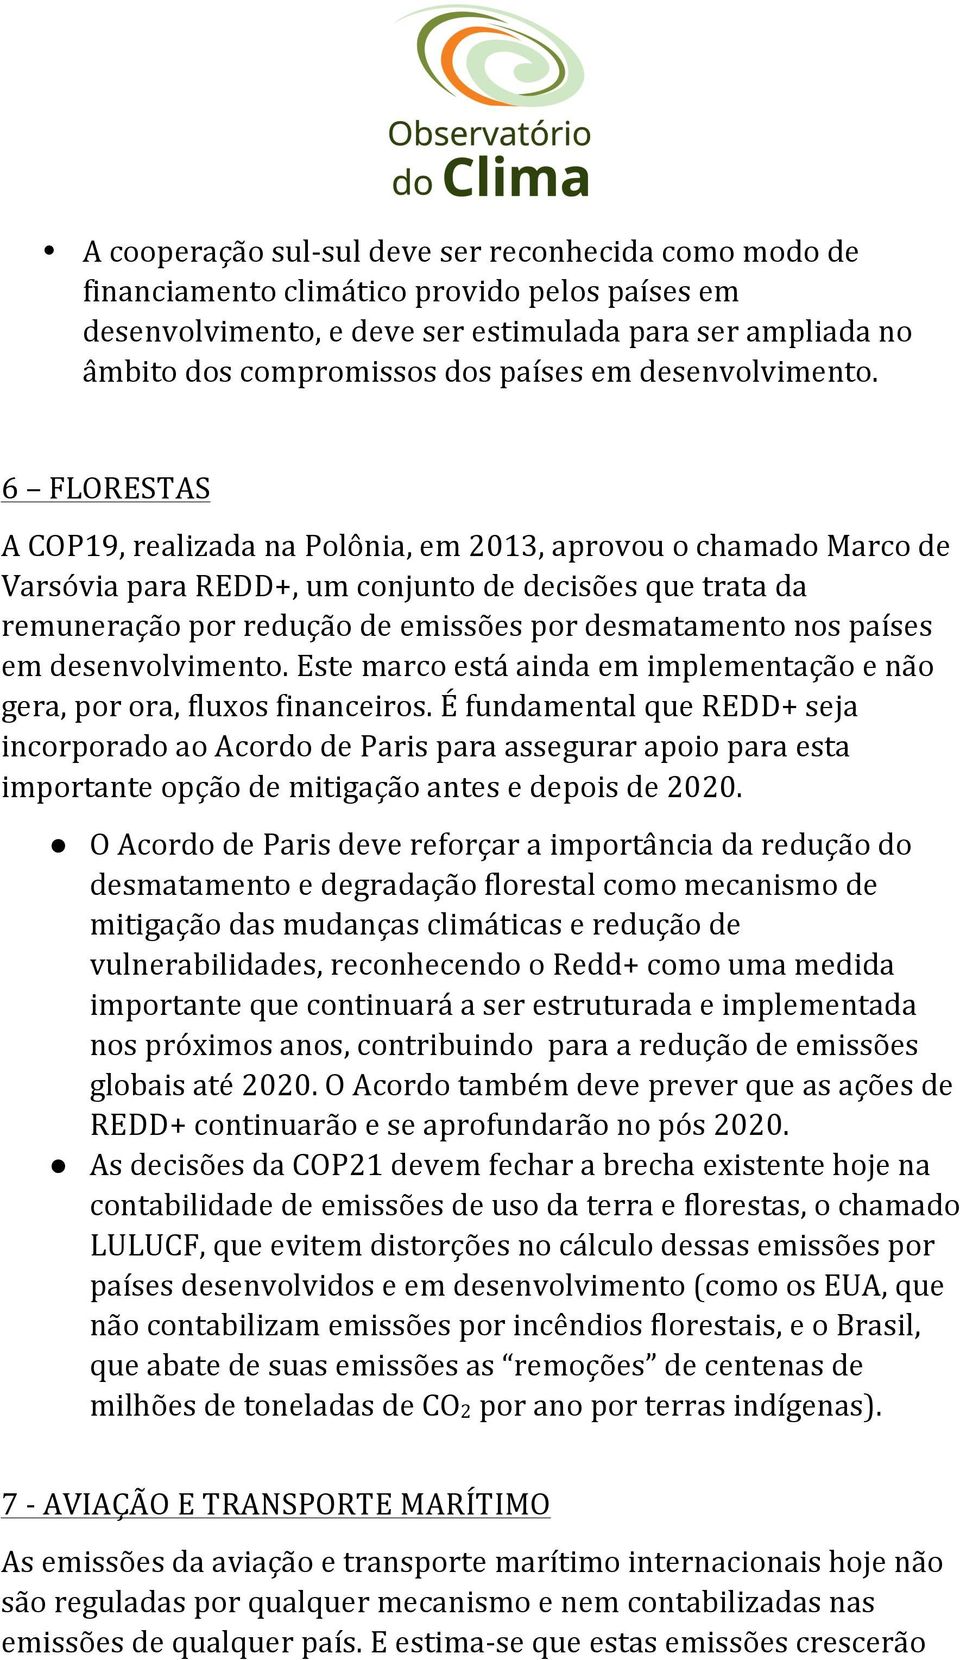 6 FLORESTAS A COP19, realizada na Polônia, em 2013, aprovou o chamado Marco de Varsóvia para REDD+, um conjunto de decisões que trata da remuneração por redução de emissões por desmatamento nos